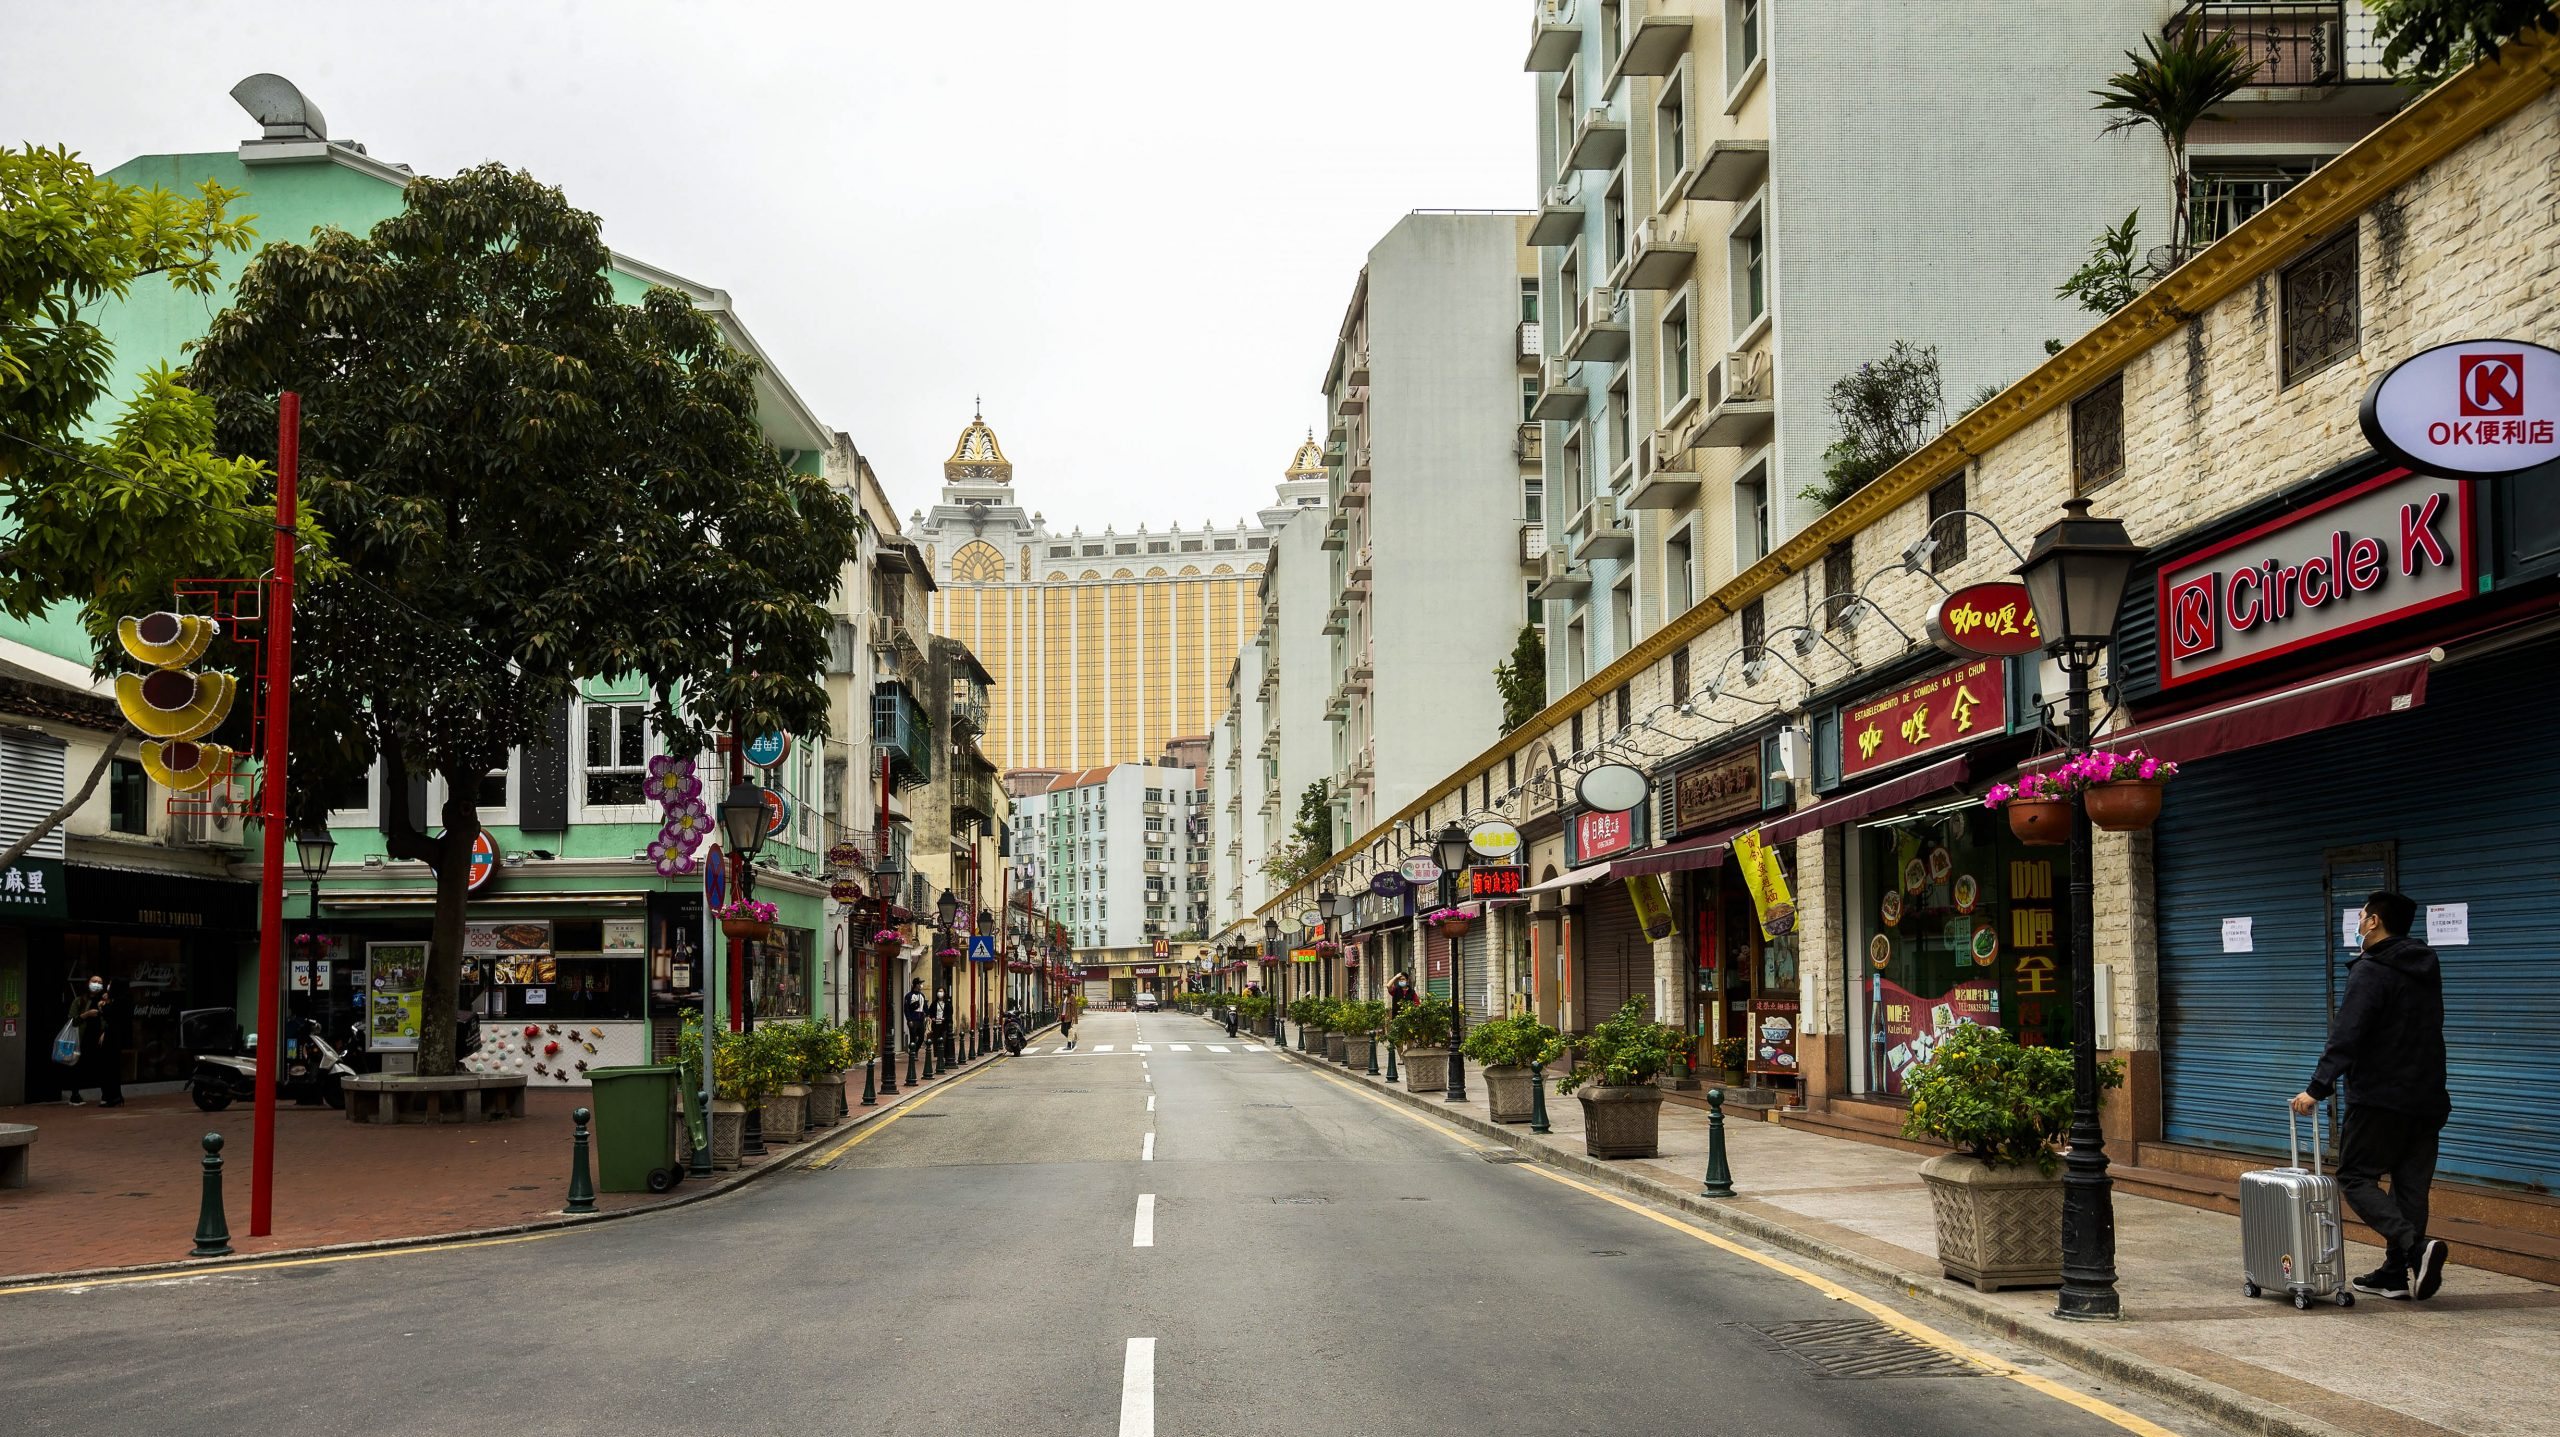 Vários crimes violentos como o sequestro e o tráfico de droga estão ligados ao negócio do jogo, que atrai milhões de pessoas todos os anos a Macau